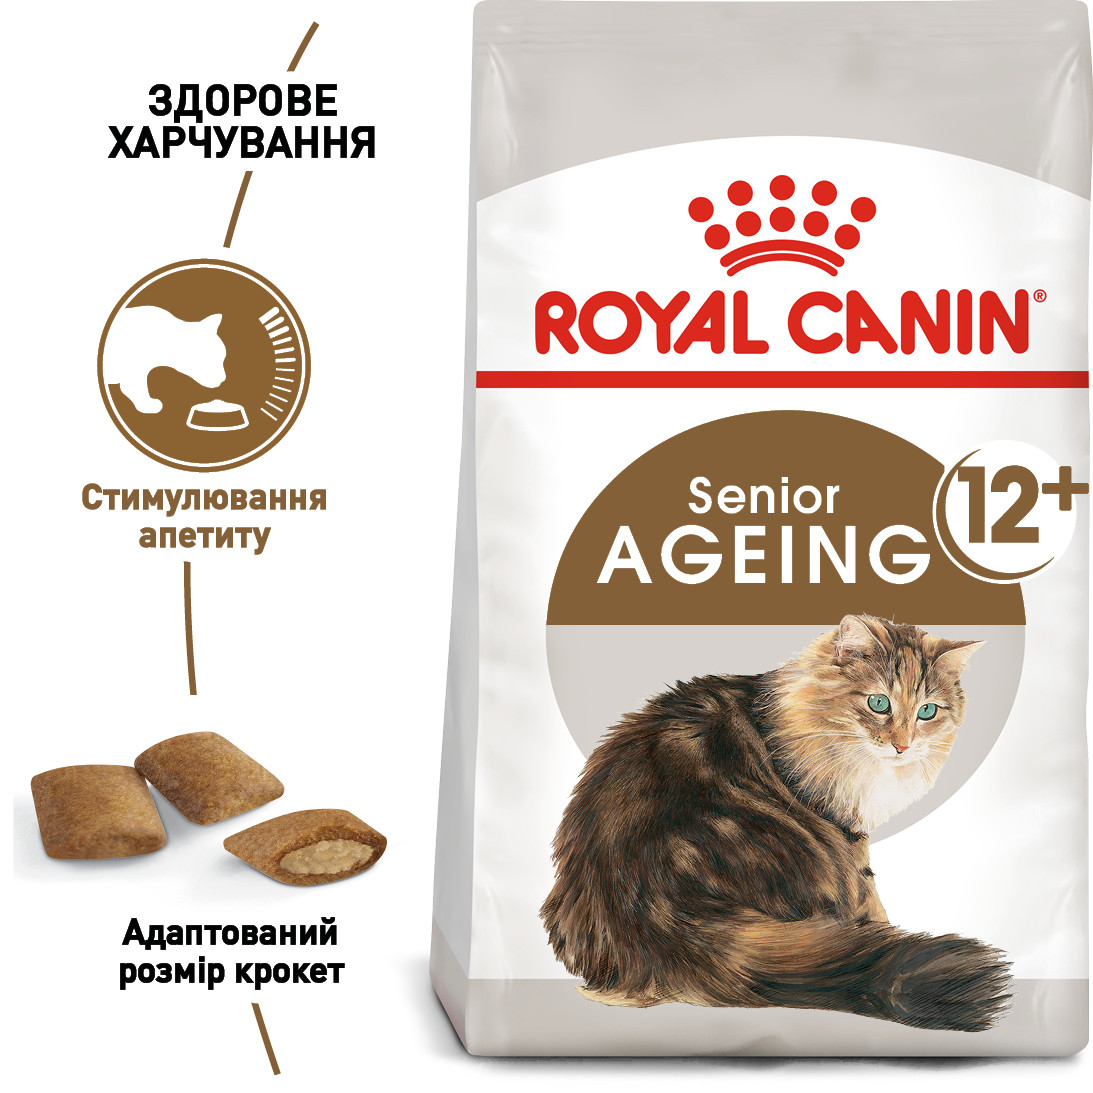 Royal Сапіп Ageing 12+ сухий корм для старіючих кішок старше 12 років, 2КГ